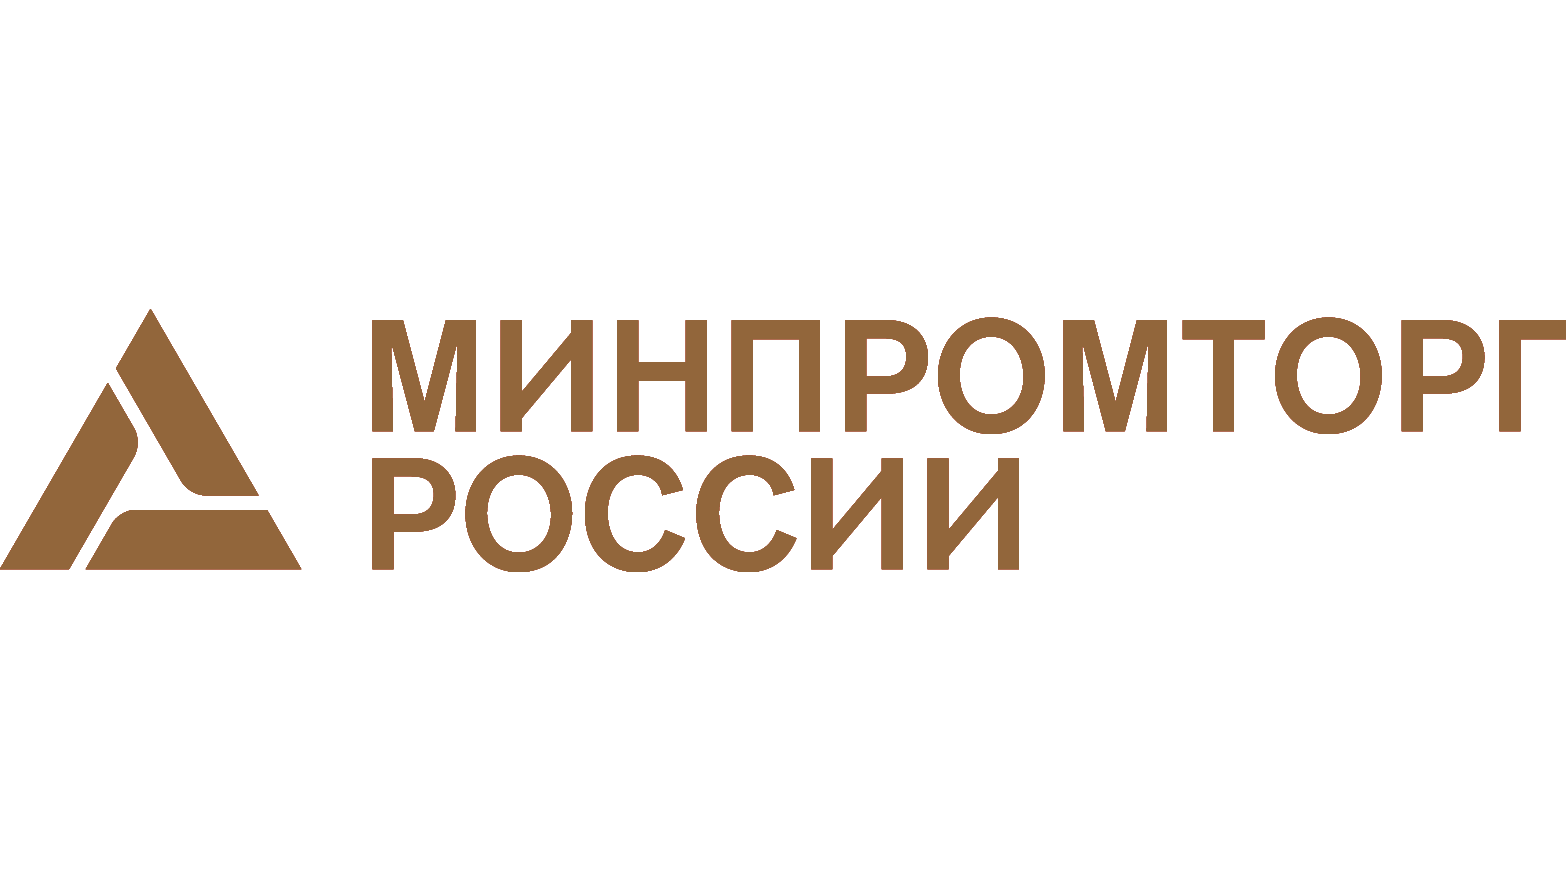 Https minpromtorg gov ru. Министерство промышленности и торговли Российской Федерации. Министерство промышленности и торговли Российской Федерации лого. Министерство промышленности Ри логотип.